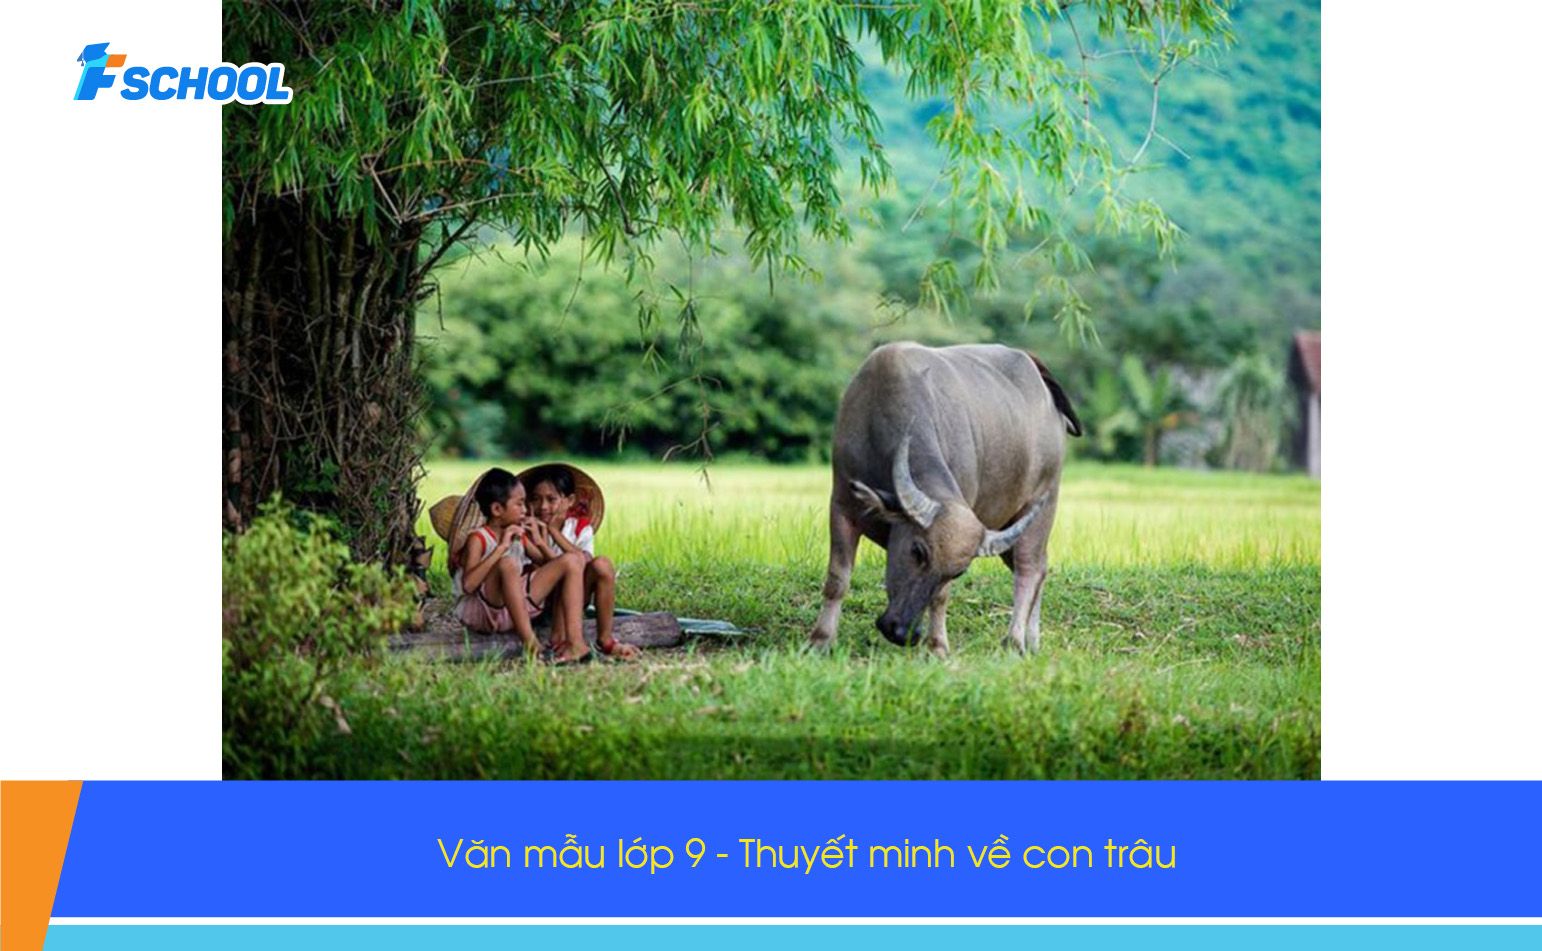 Đề bài: Thuyết minh về con trâu Việt Nam